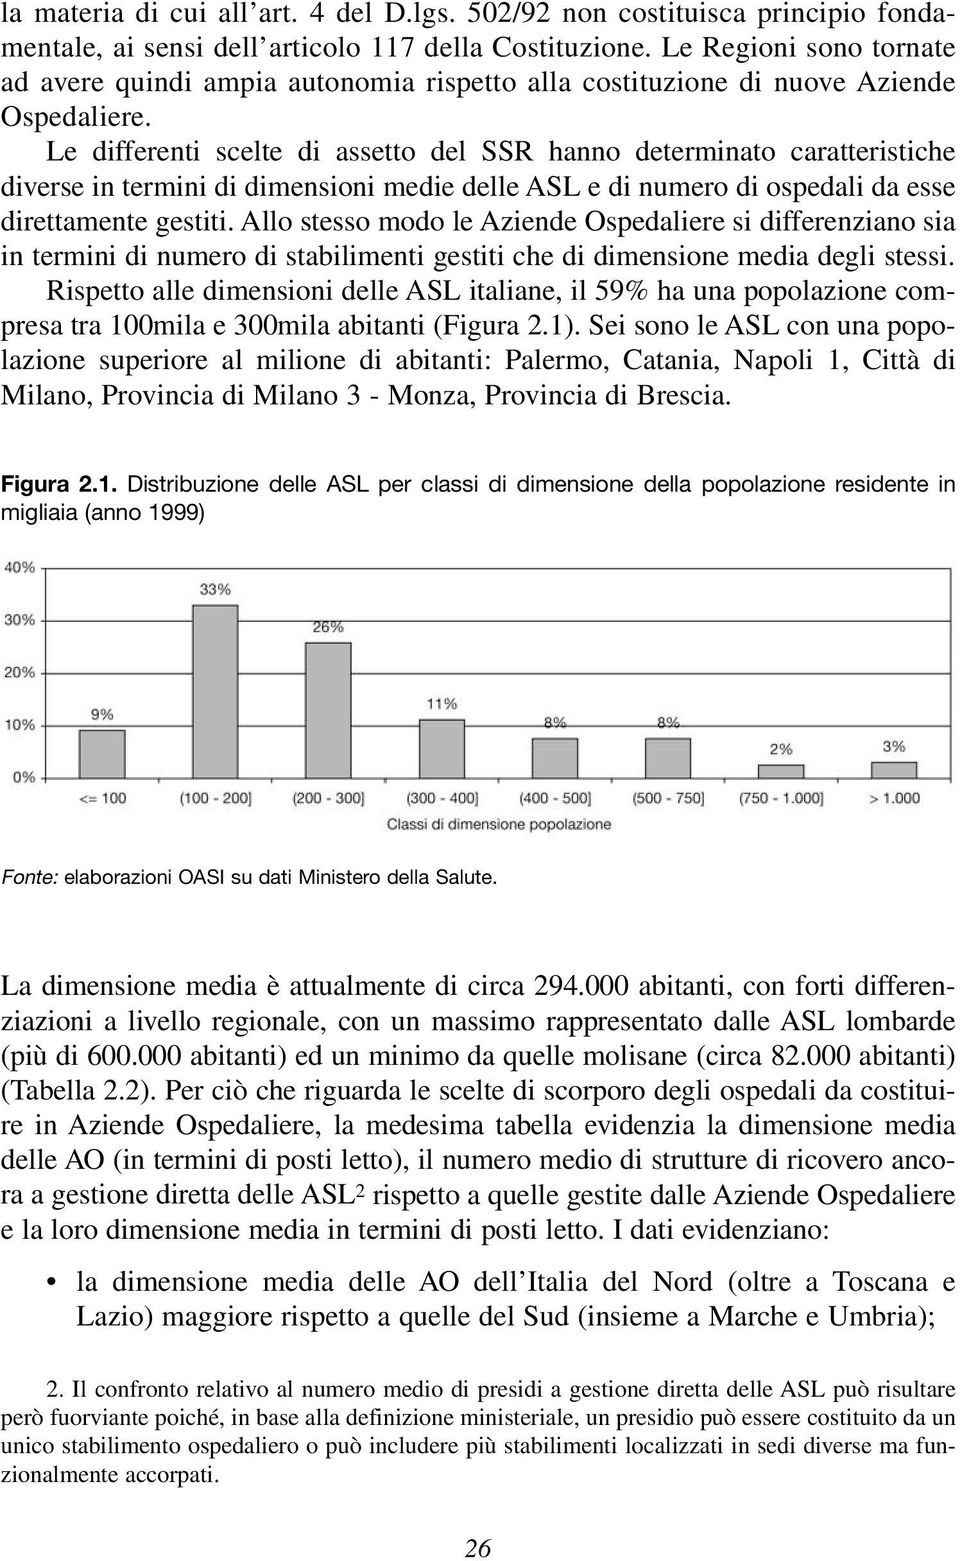 Le differenti scelte di assetto del SSR hanno determinato caratteristiche diverse in termini di dimensioni medie delle ASL e di numero di ospedali da esse direttamente gestiti.